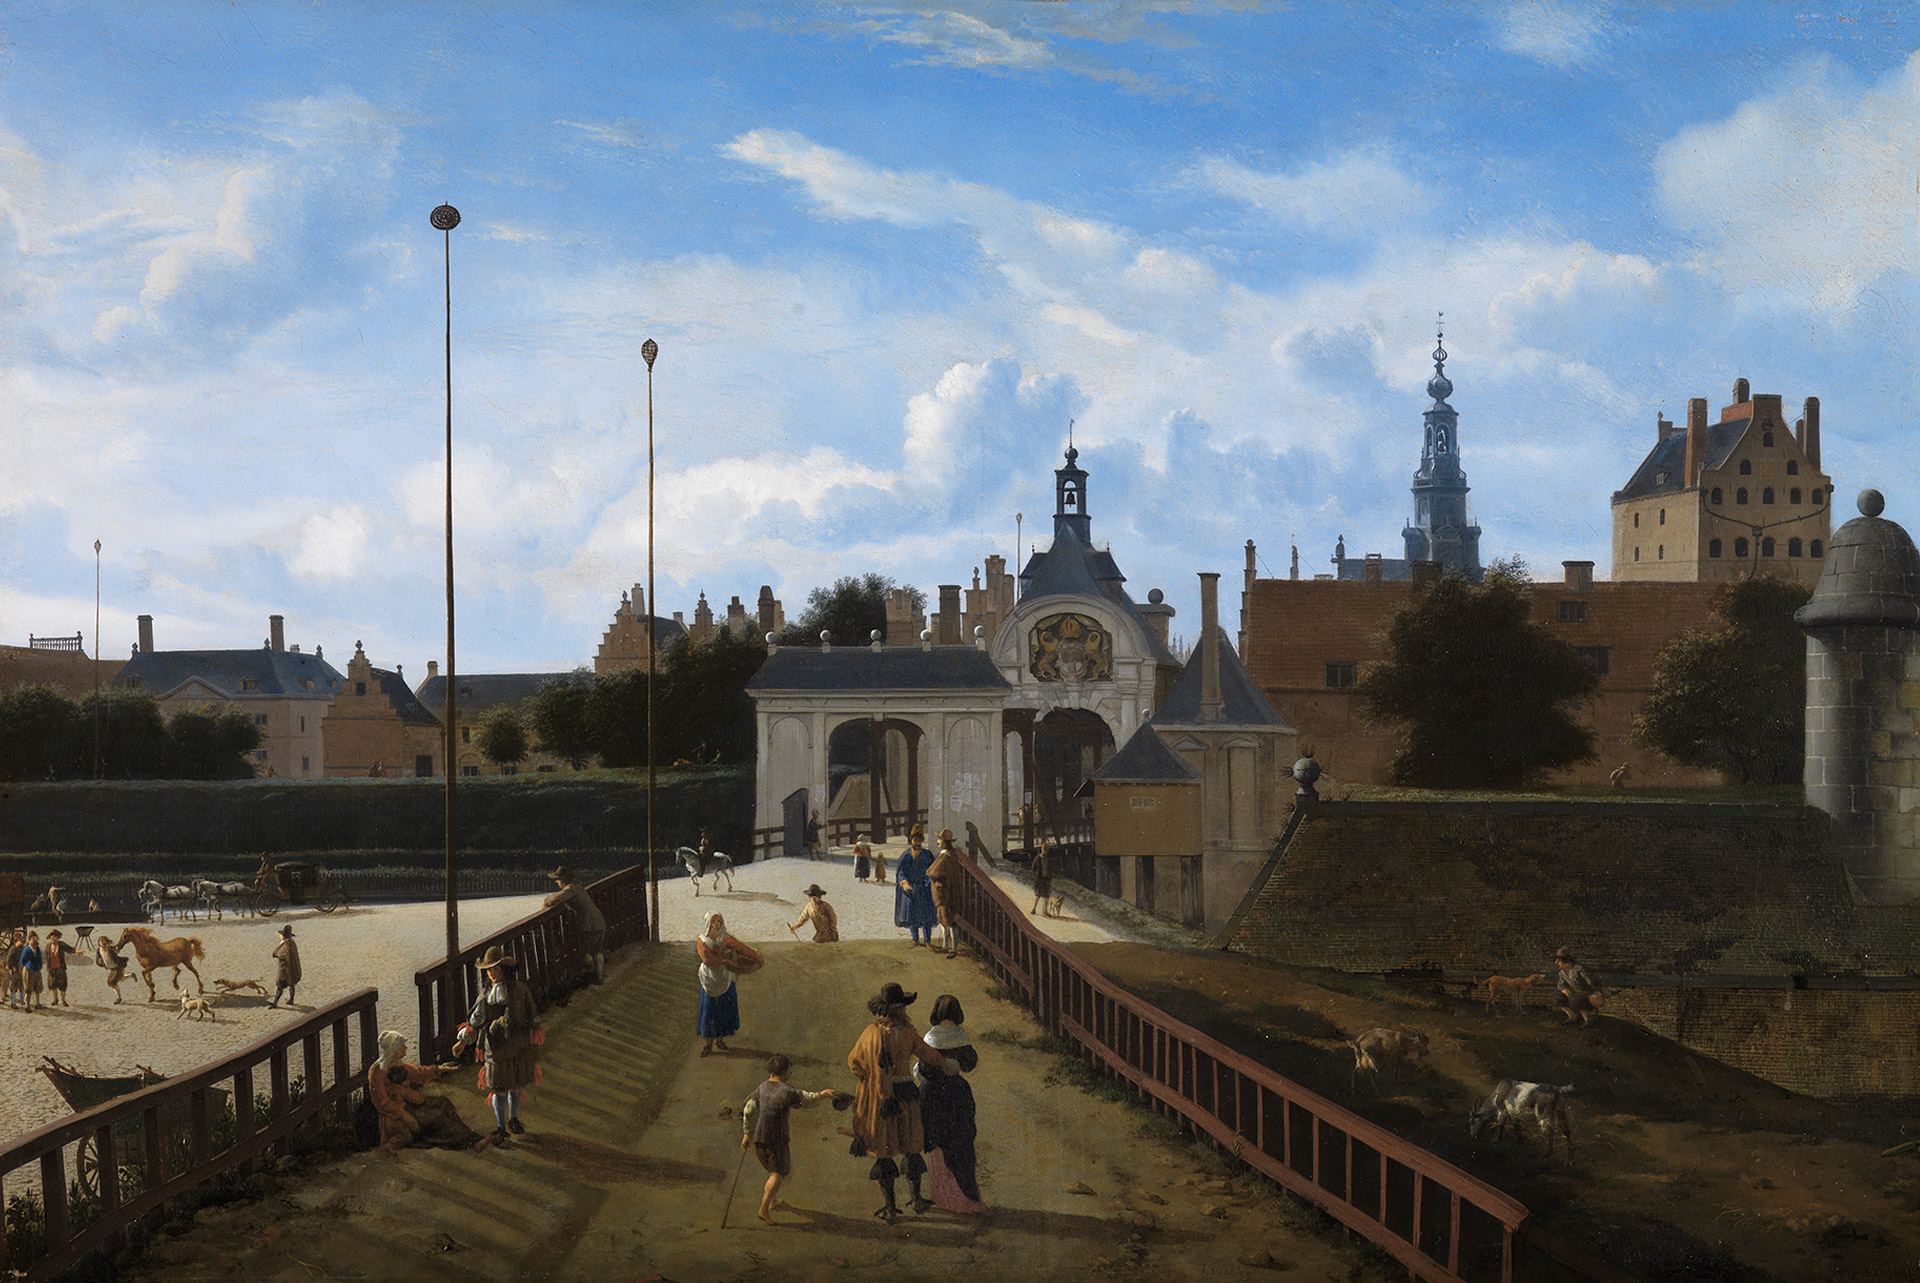 Das Gemälde zeigt eine Ansicht des St. Anthonispoort in Amsterdam bei blauem Himmel. Einige Fußgänger*innen sind unterwegs.